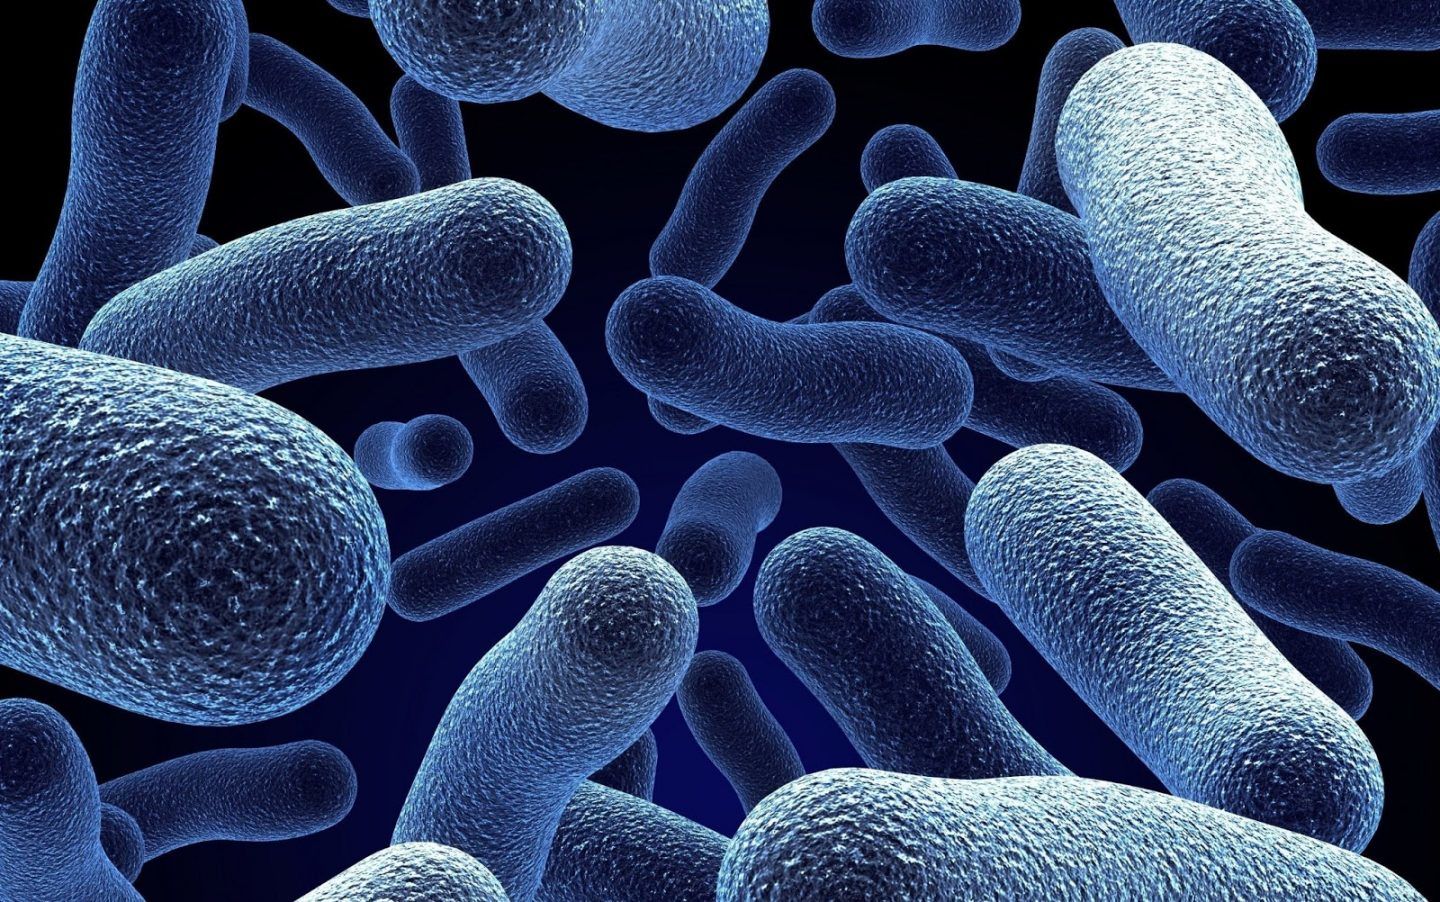 طريقة اسرع للكشف عن البكتيريا قد تنقذ حياتك !